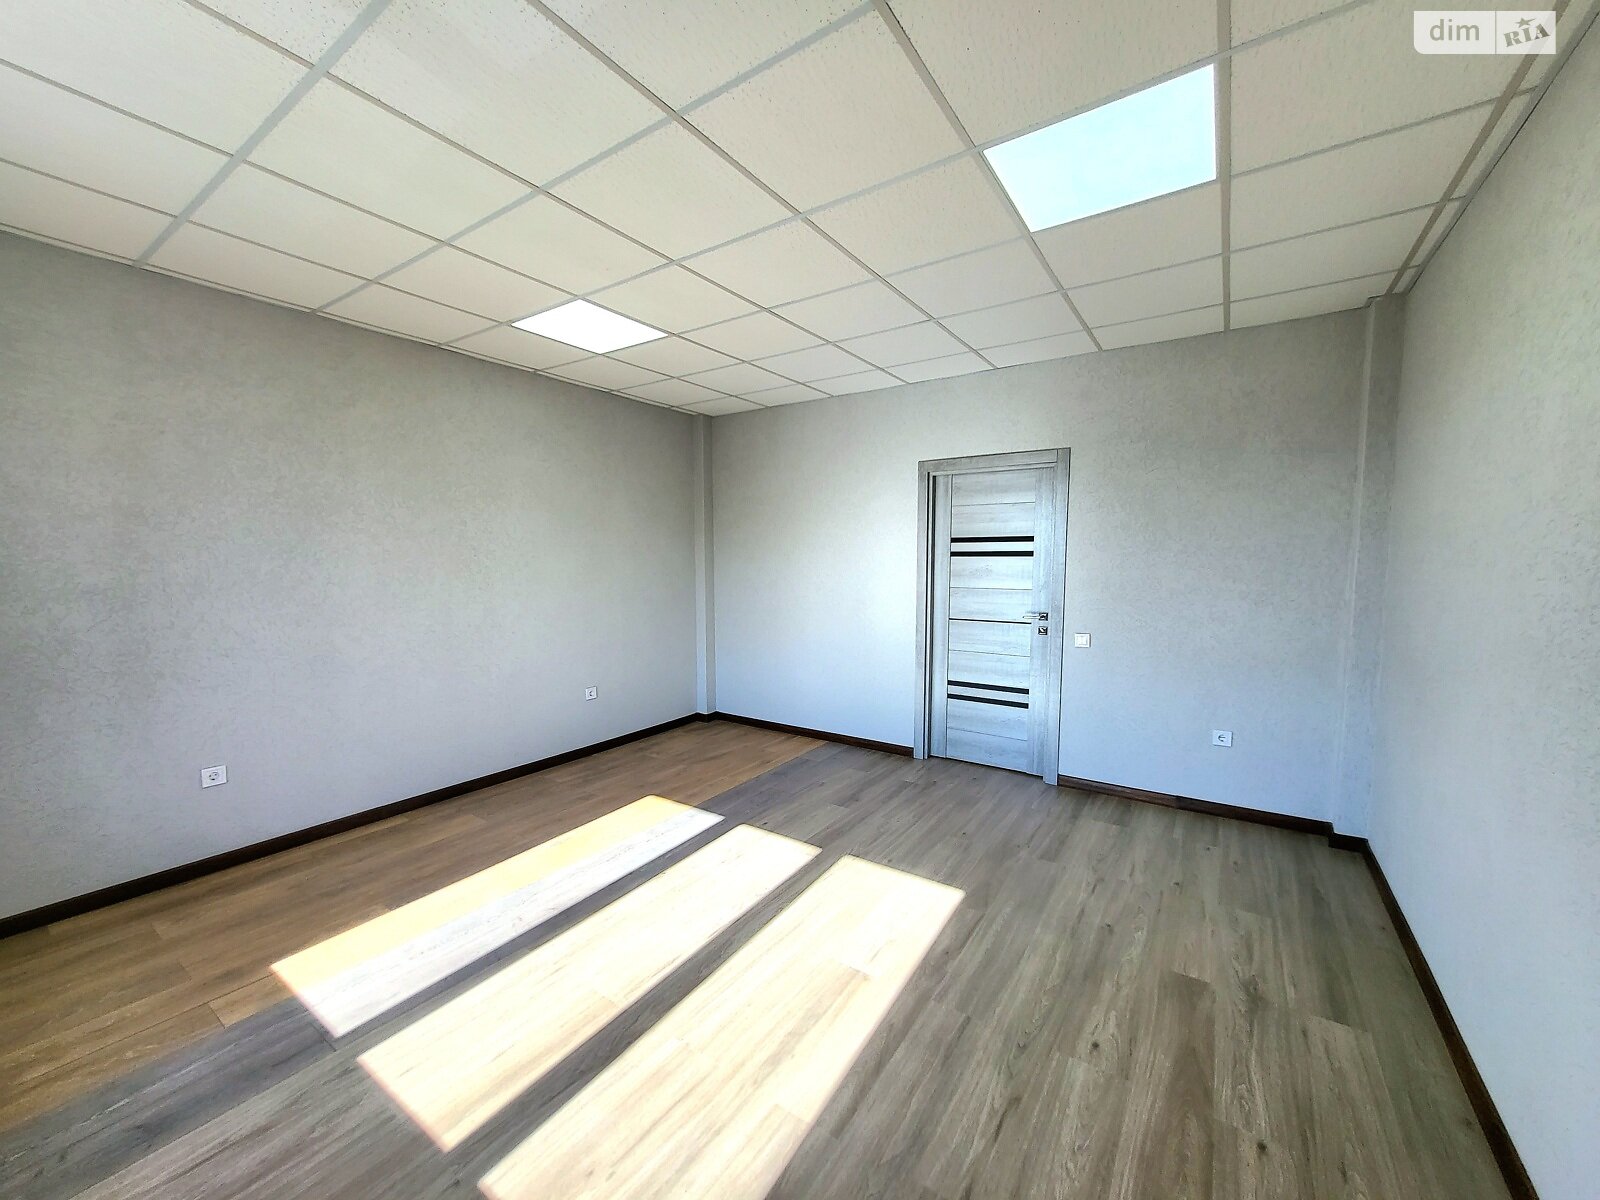 Аренда офисного помещения в Якушинцах, Хмельницьке шосе, помещений - 12, этаж - 1 фото 1